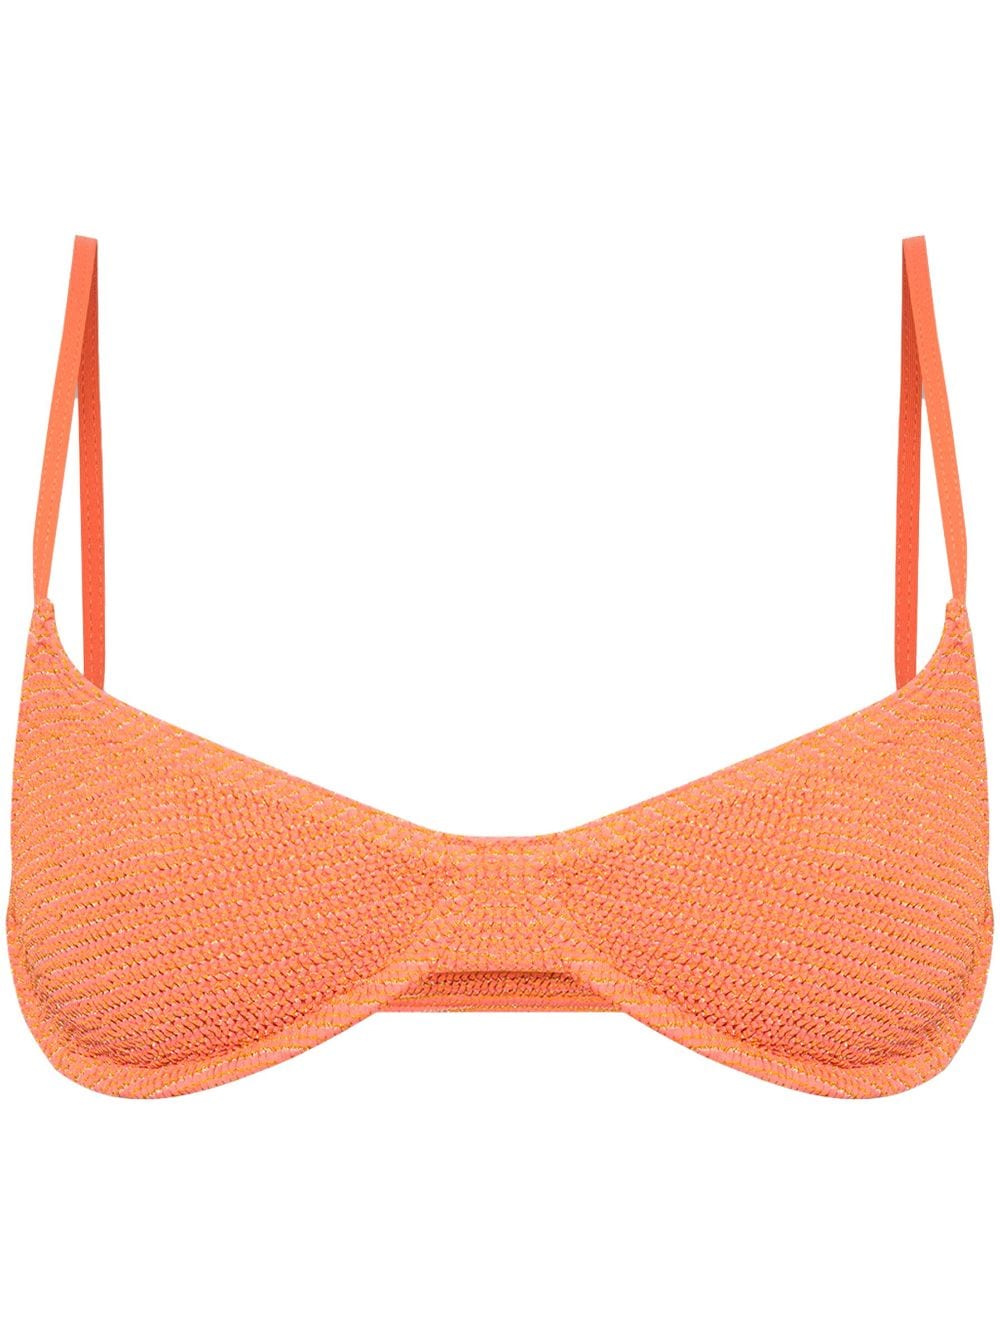 Bondeye Gracie Crinkled Bikini Top In Orange